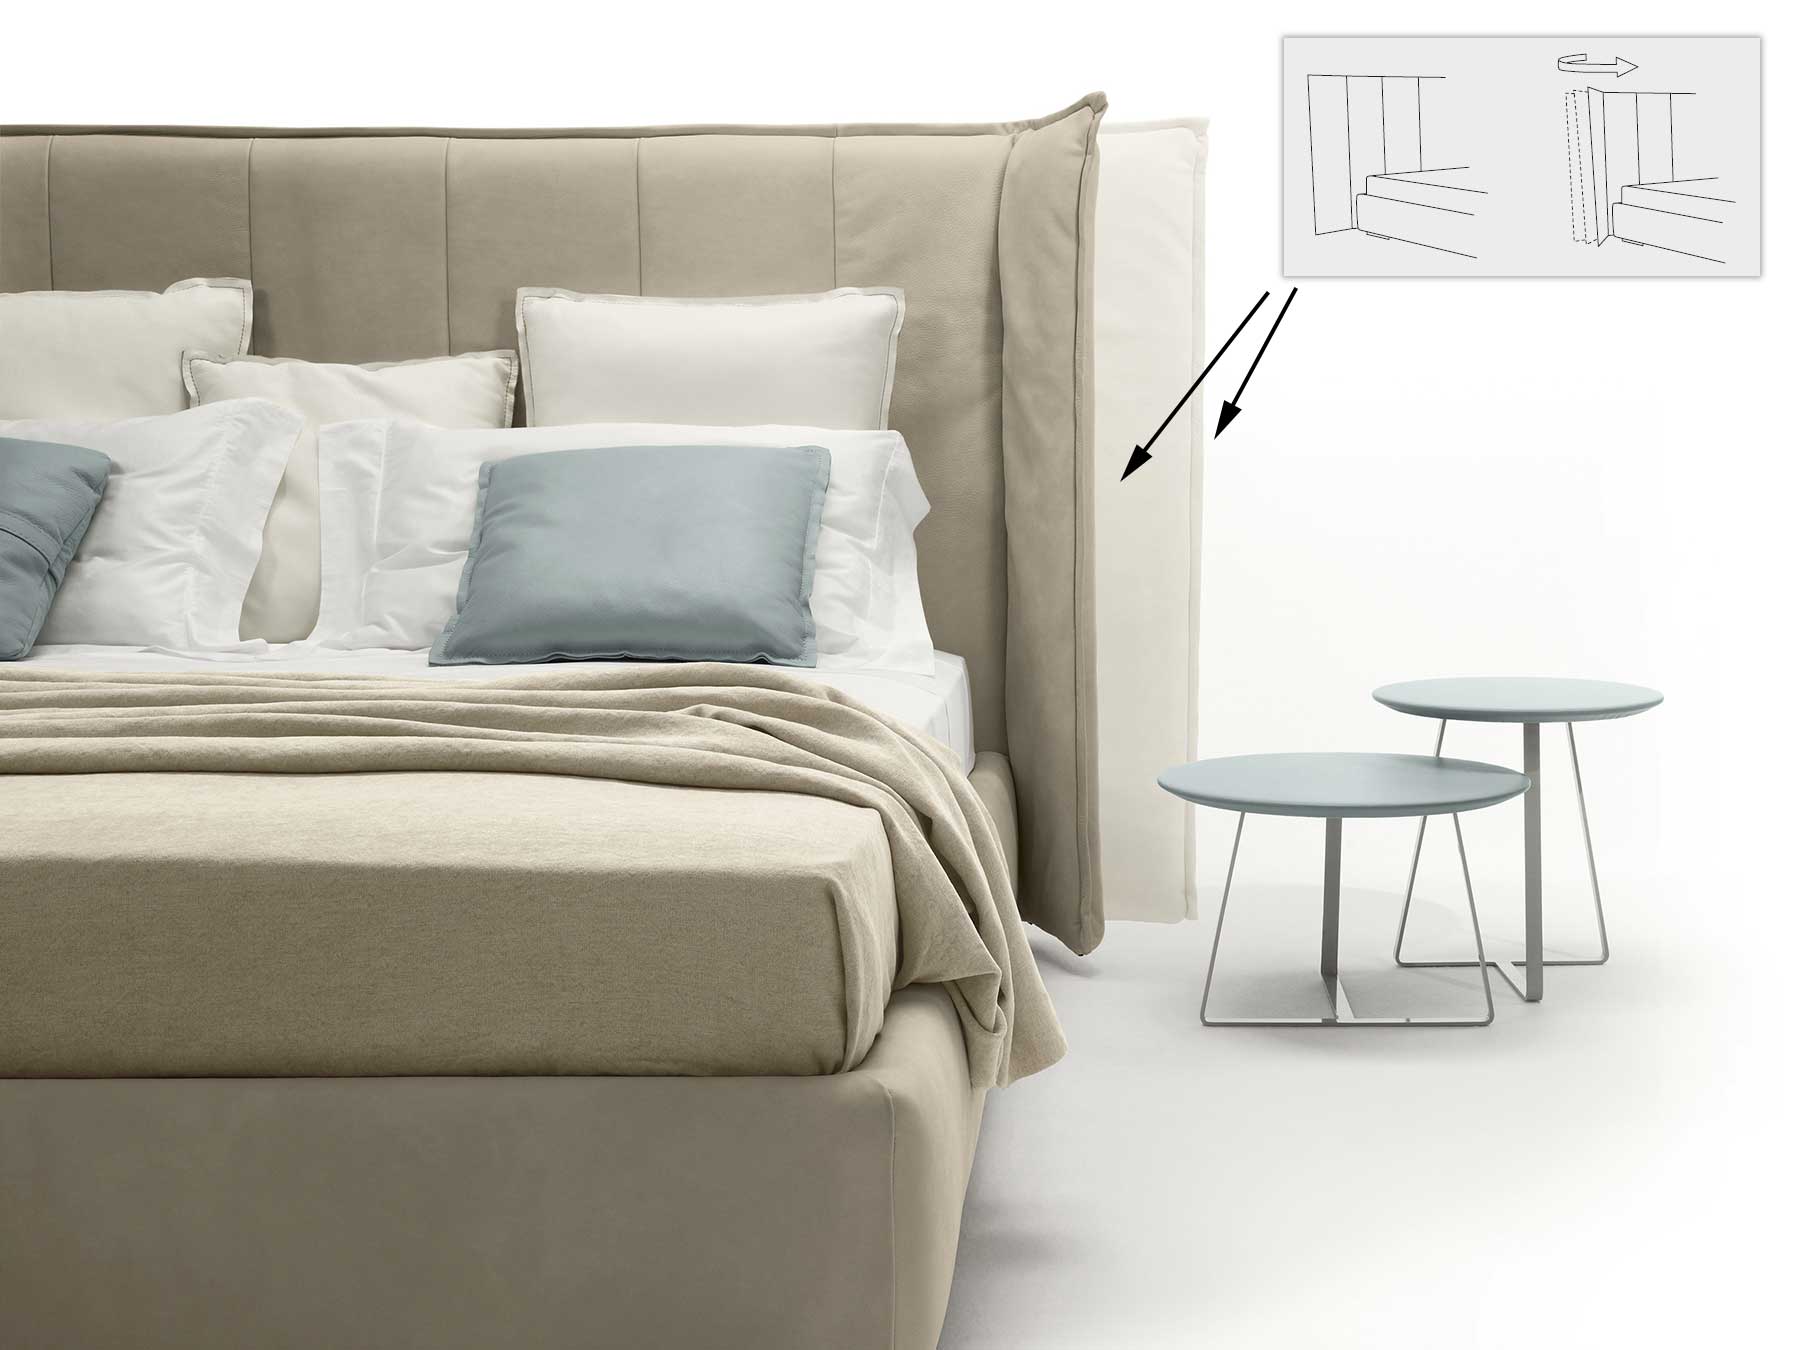 Lit en cuir avec tête de lit réglable. Vente en ligne de meubles italiens hauts de gamme. Livraison gratuite. Lit design italien avec coffre.